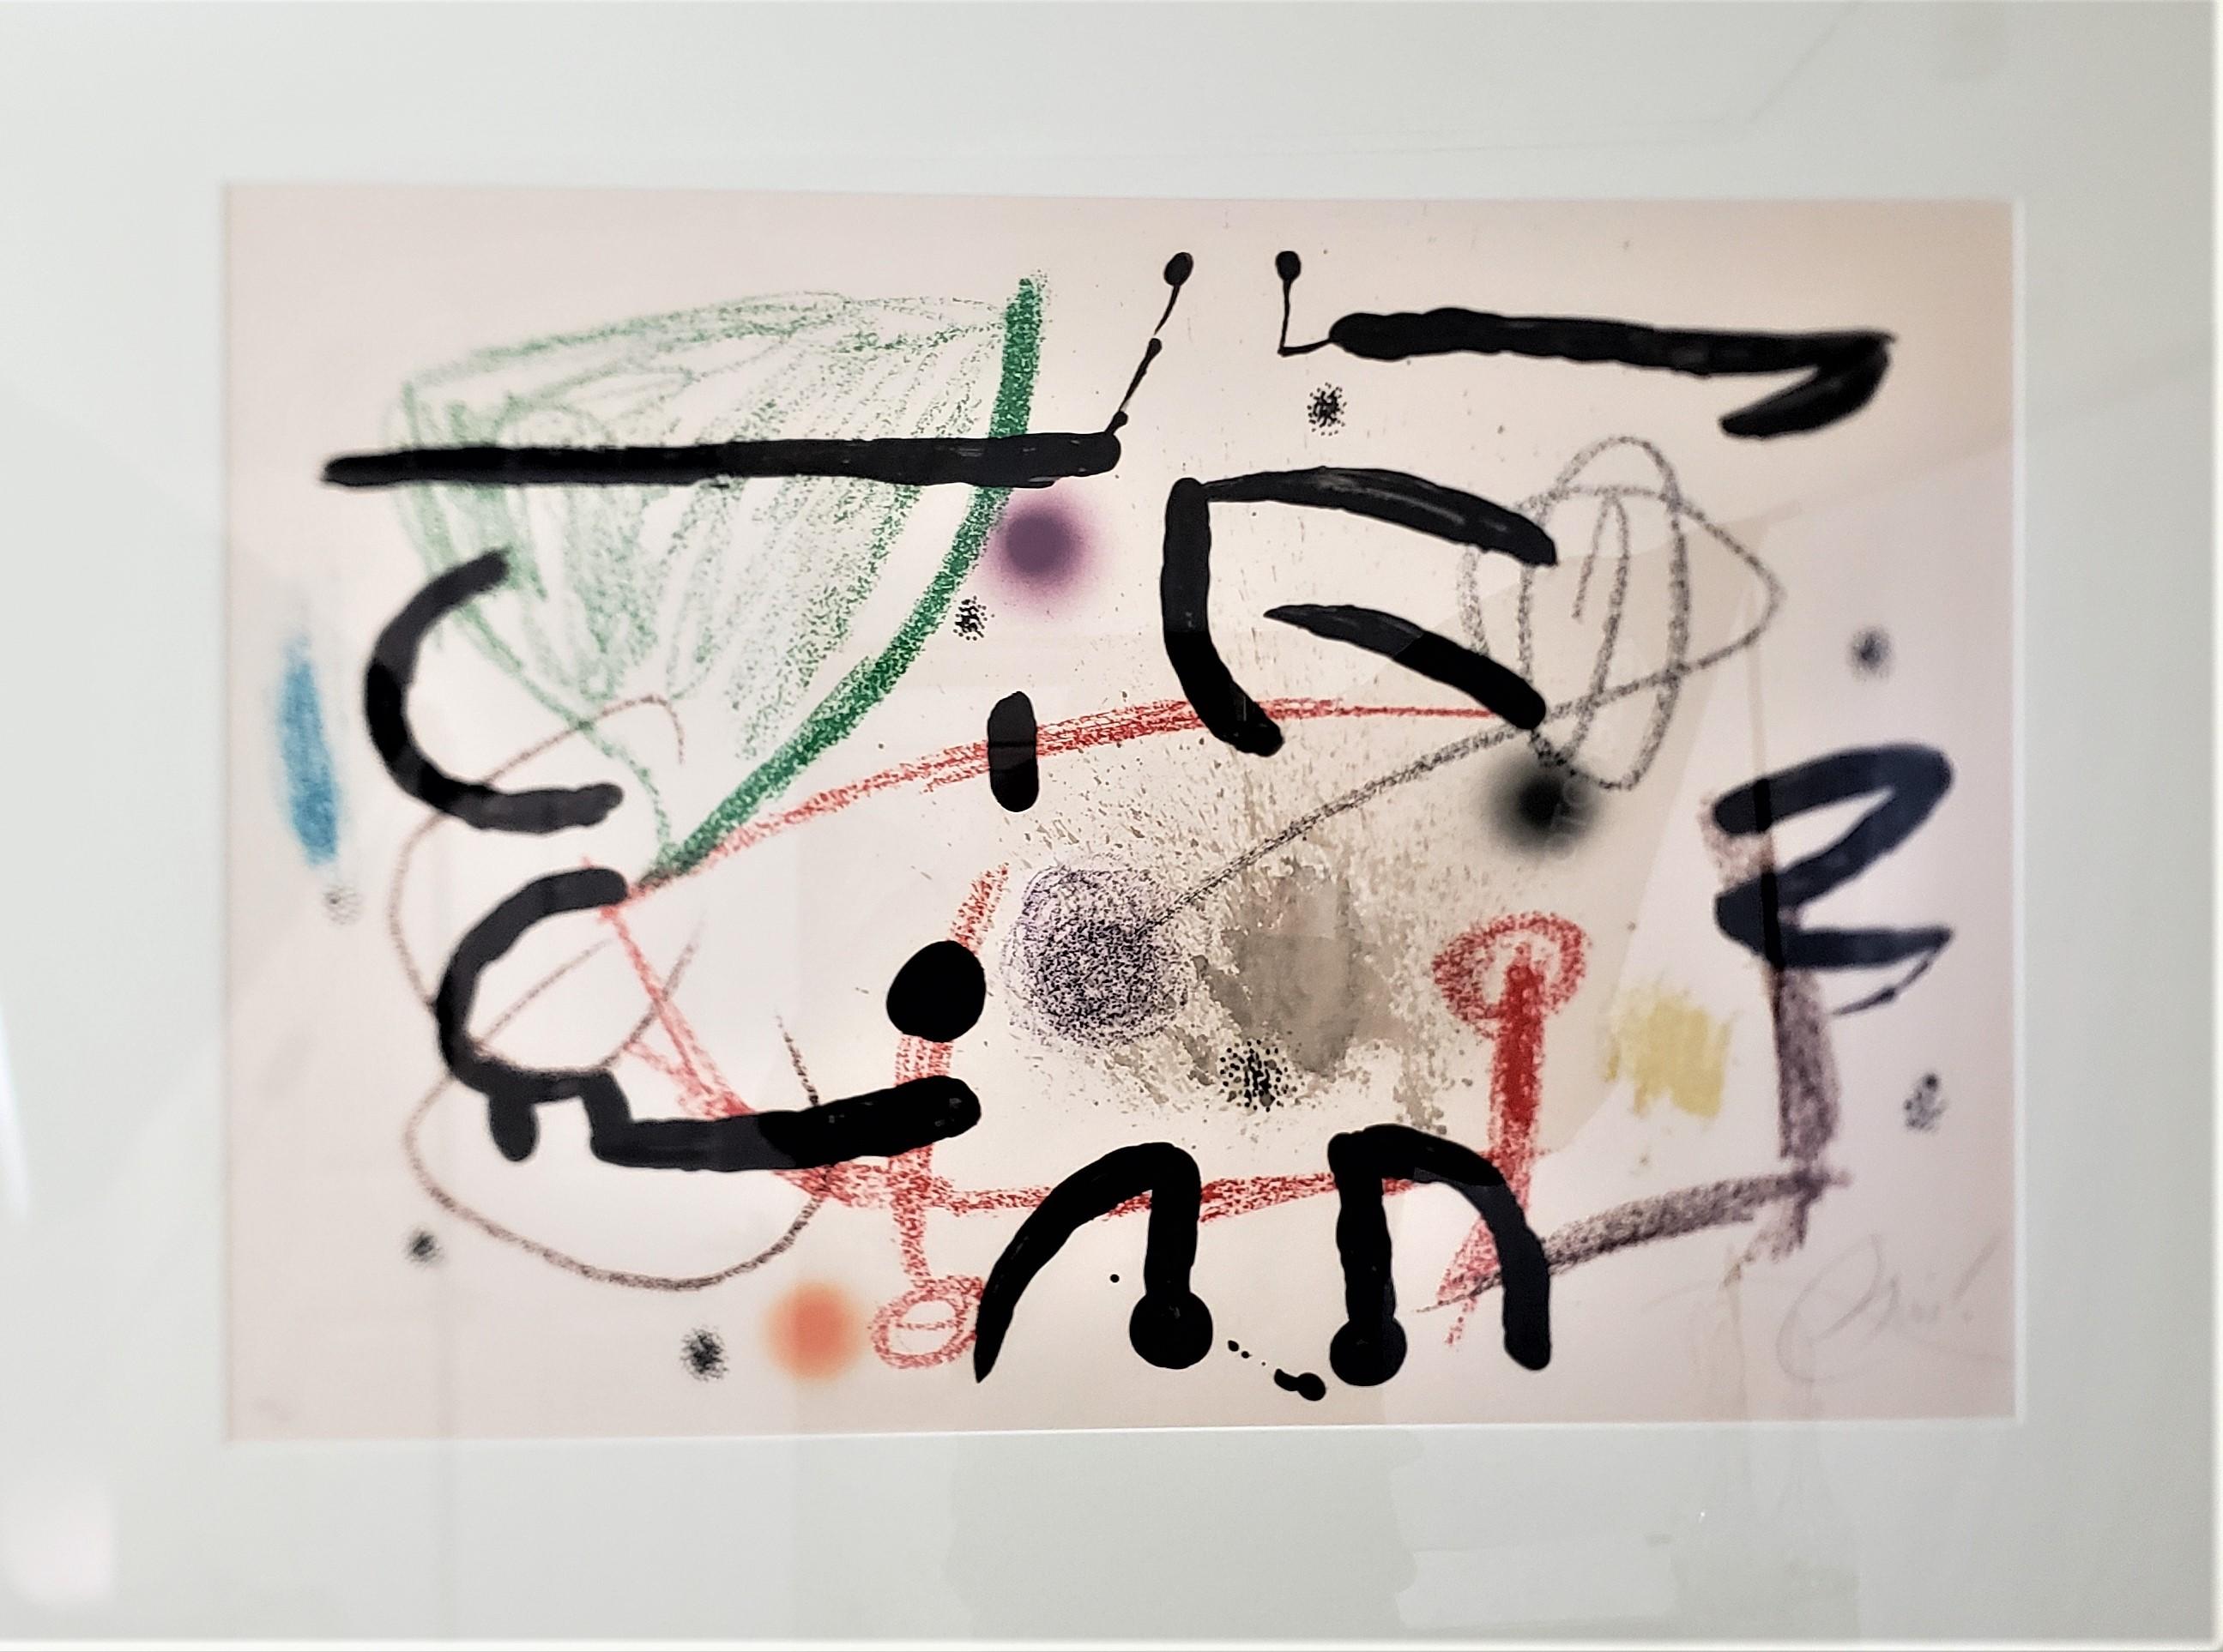 Diese signierte und nummerierte Lithografie stammt von dem berühmten spanischen Künstler Joan Miro aus dem Jahr 1975 und ist in seinem abstrakten modernistischen Stil gehalten. Diese große Lithografie trägt den Titel 